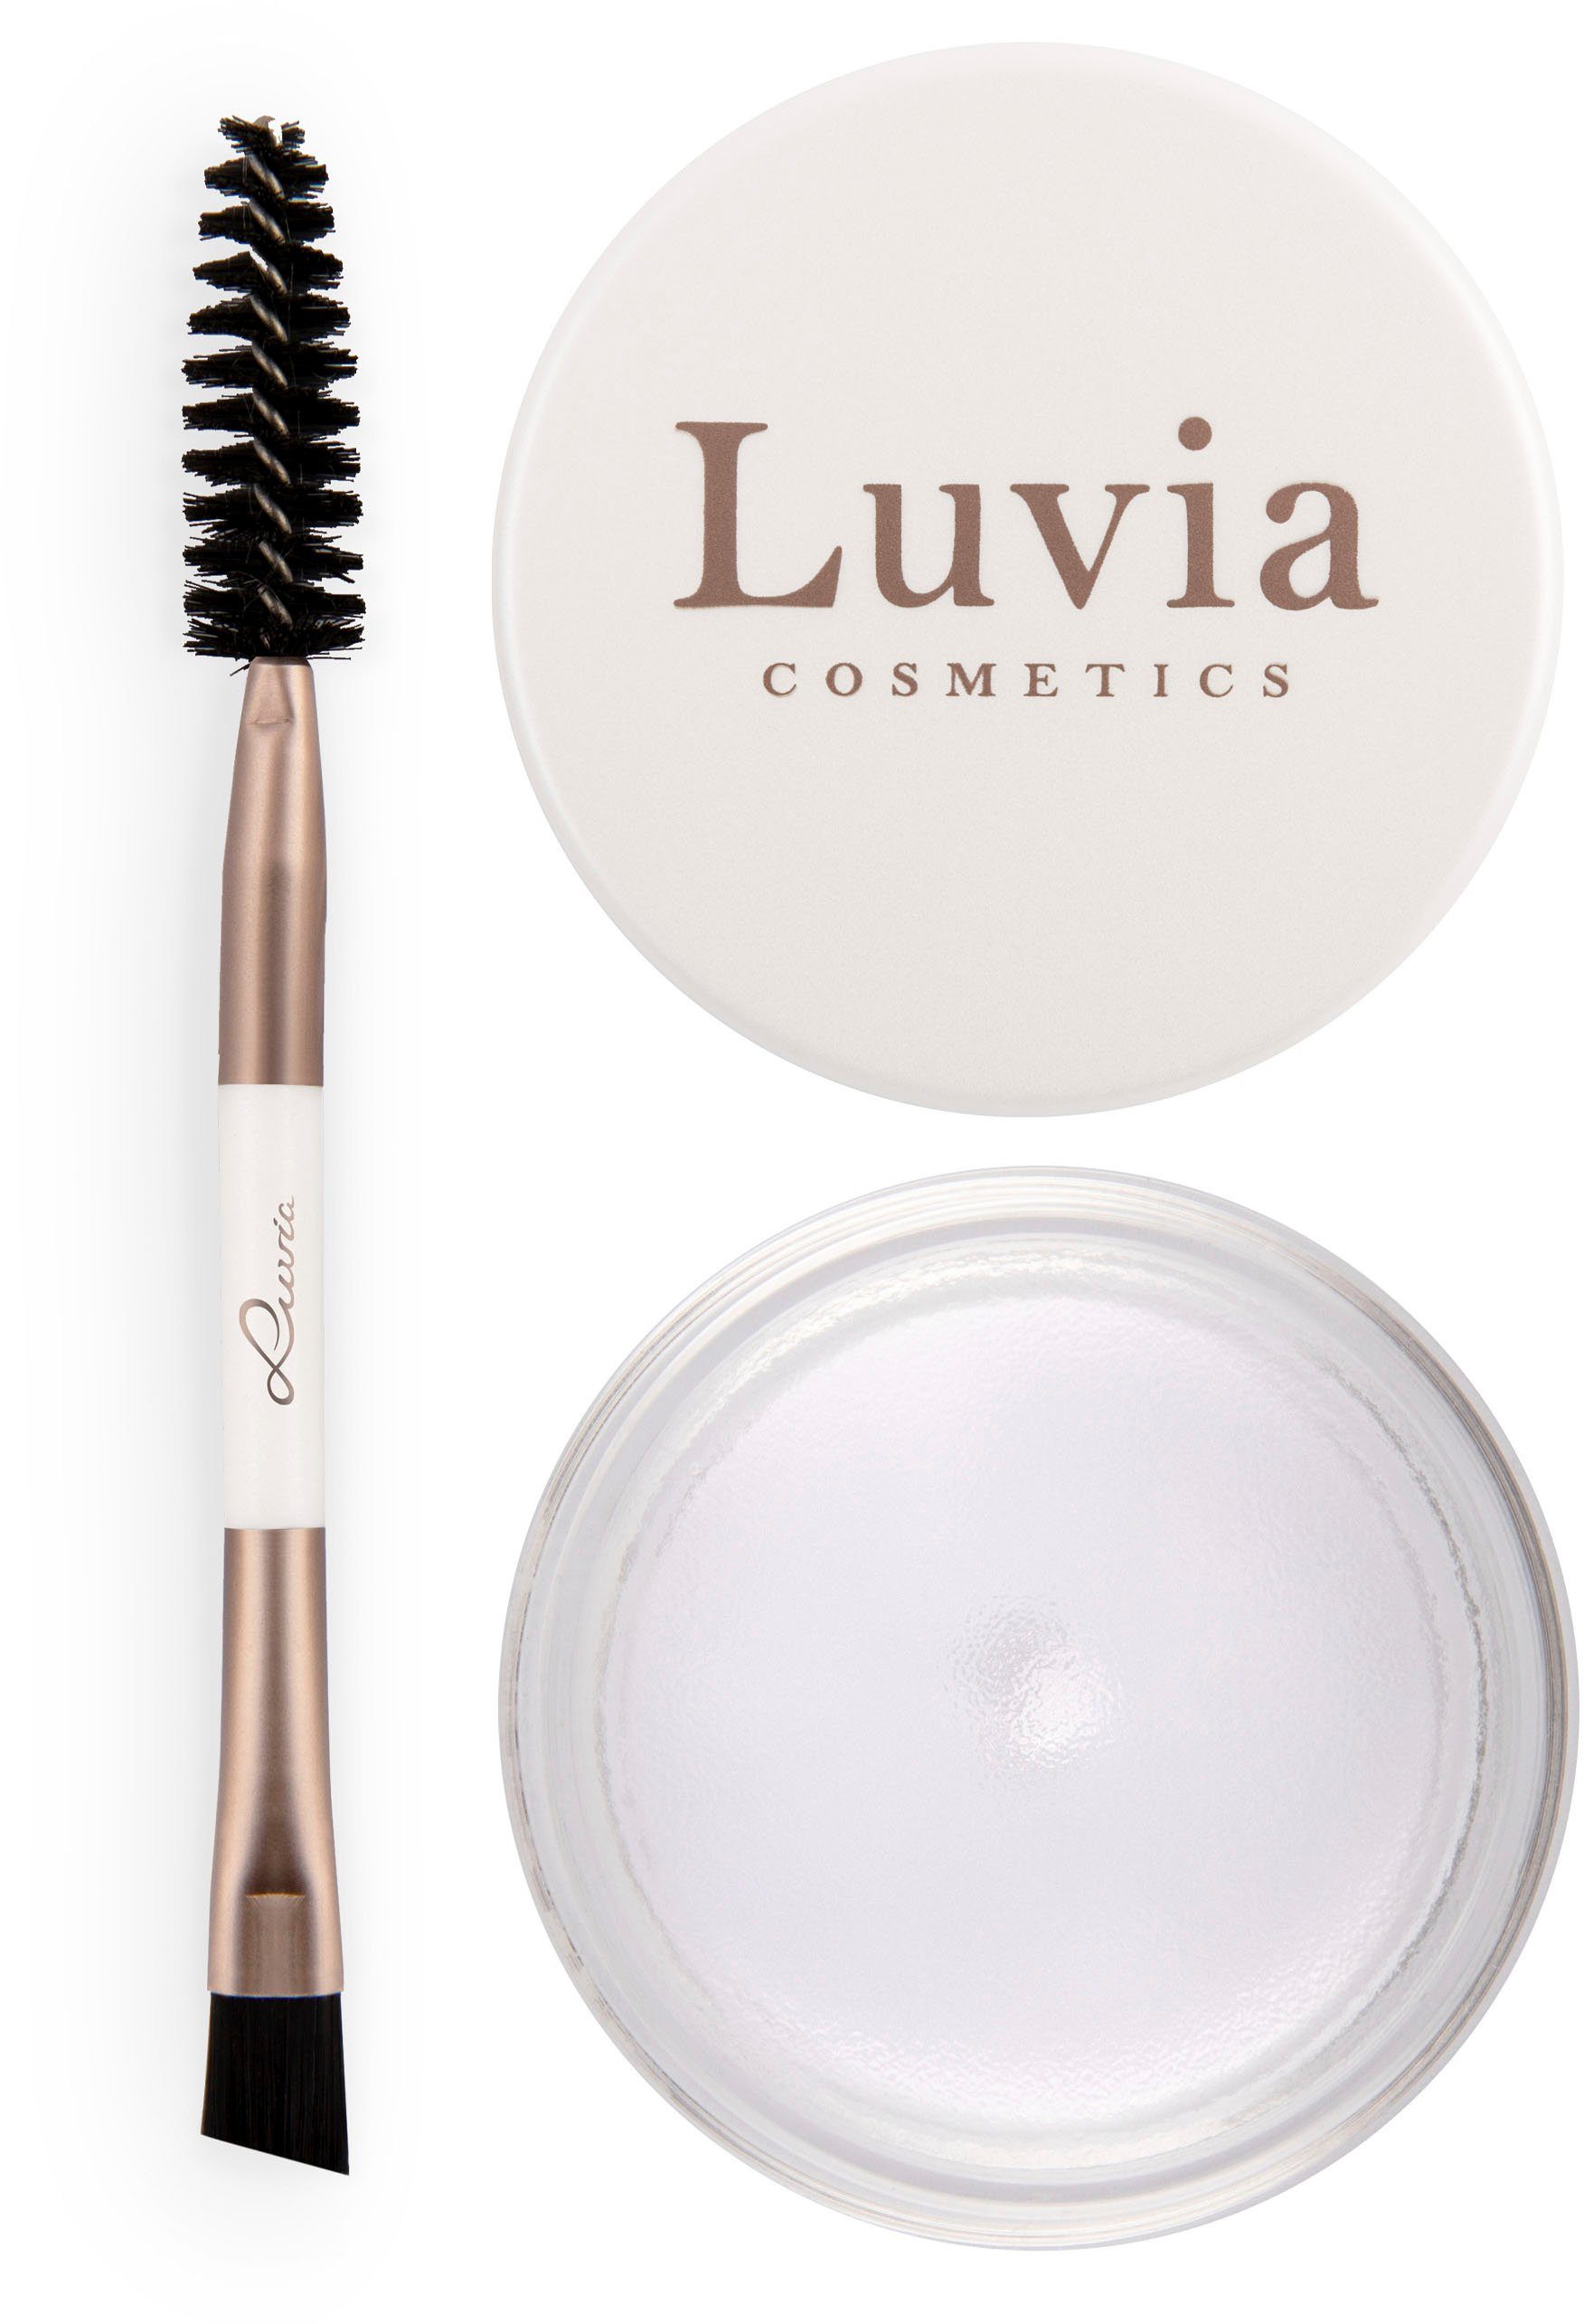 Luvia Cosmetics Lidschatten-Palette Brow Styling Gel | Lidschatten